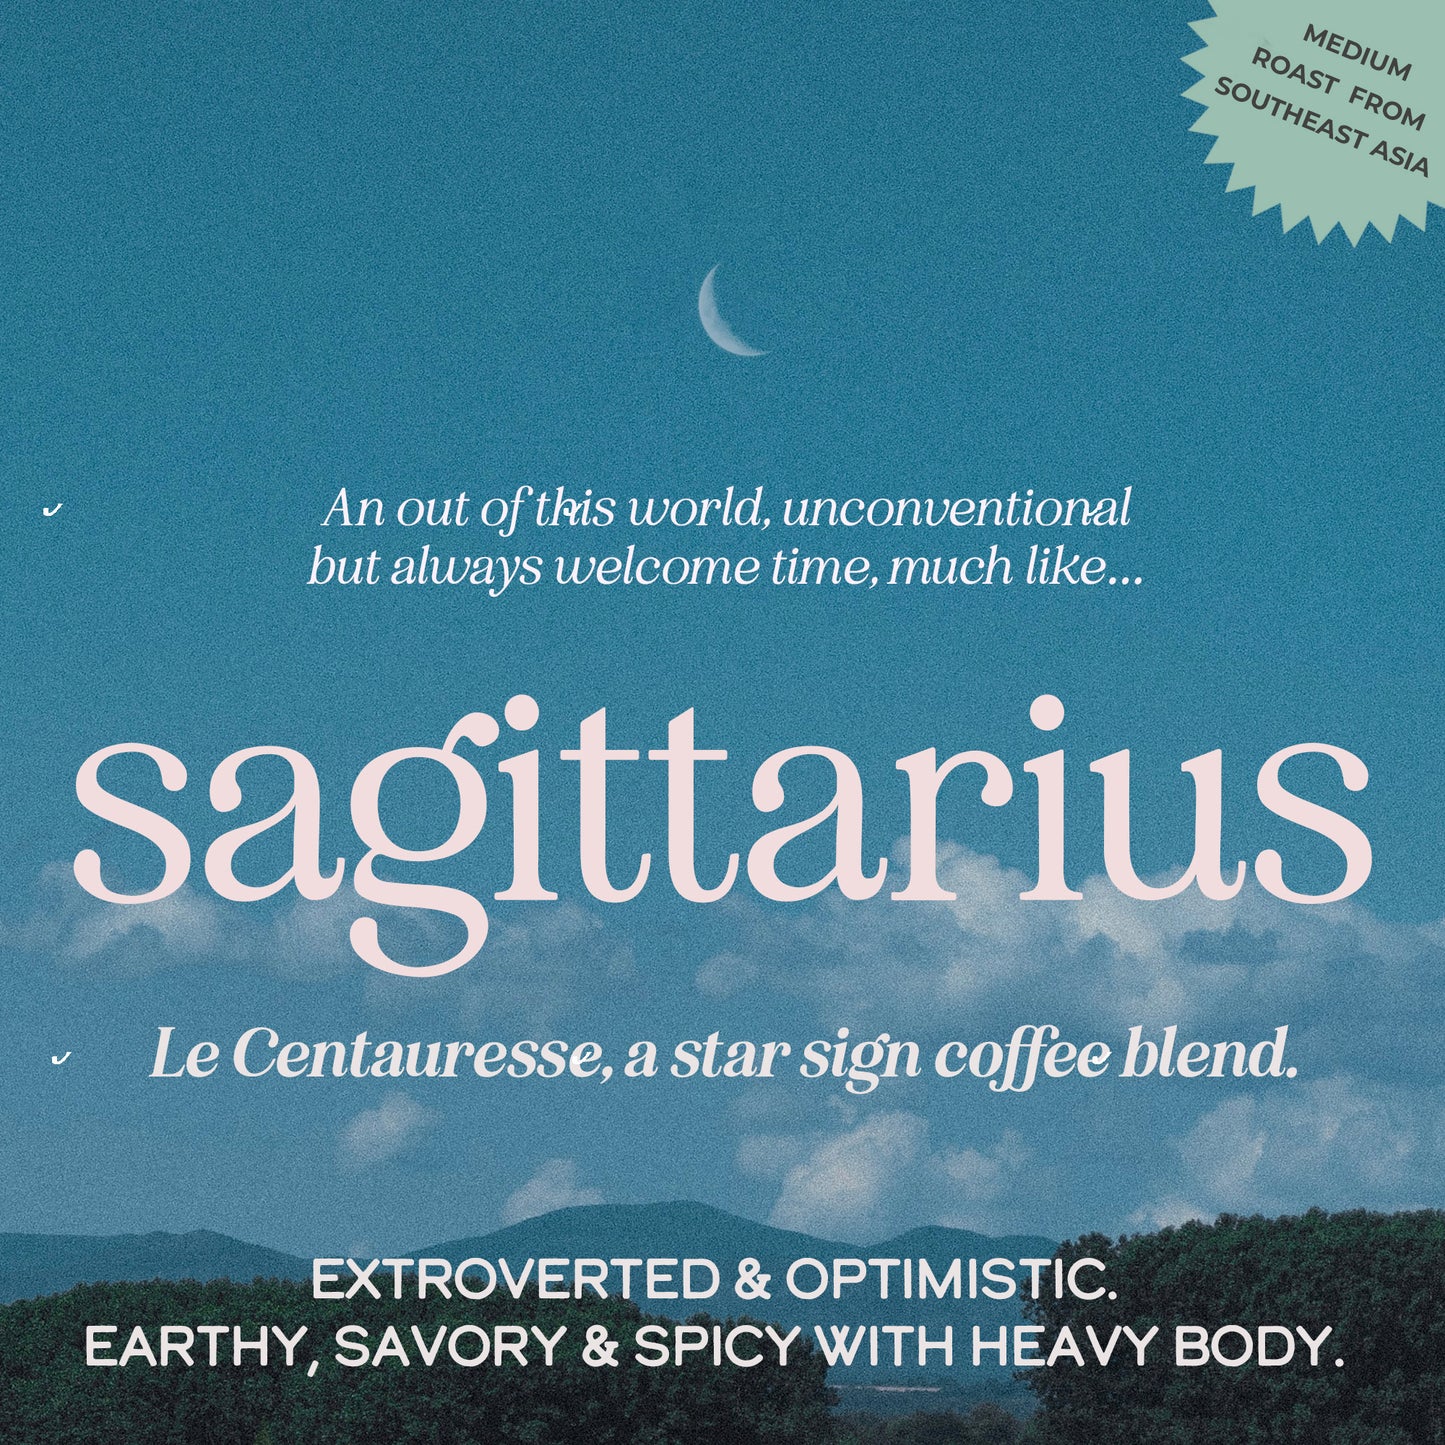 La Centauresse, Sagittarius